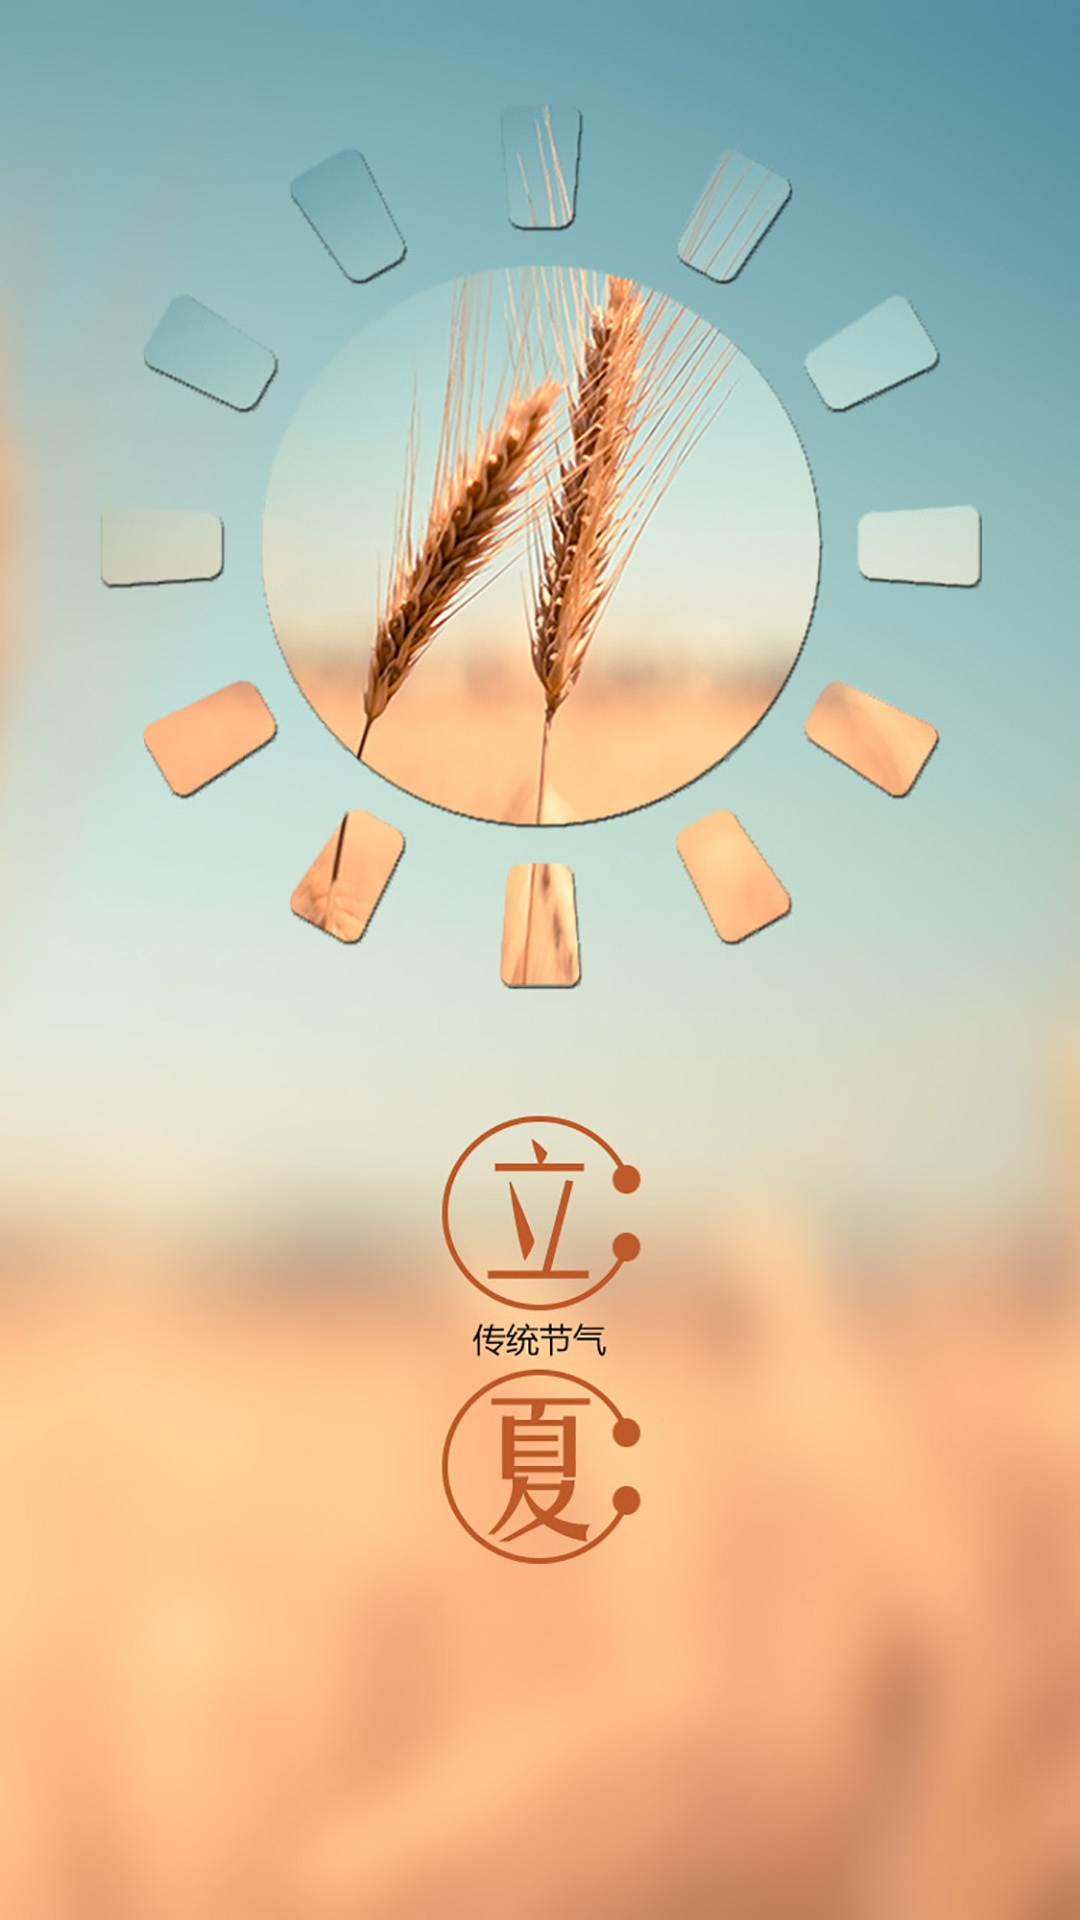 农作物 谷物 植物 立夏手机壁纸图片 小麦